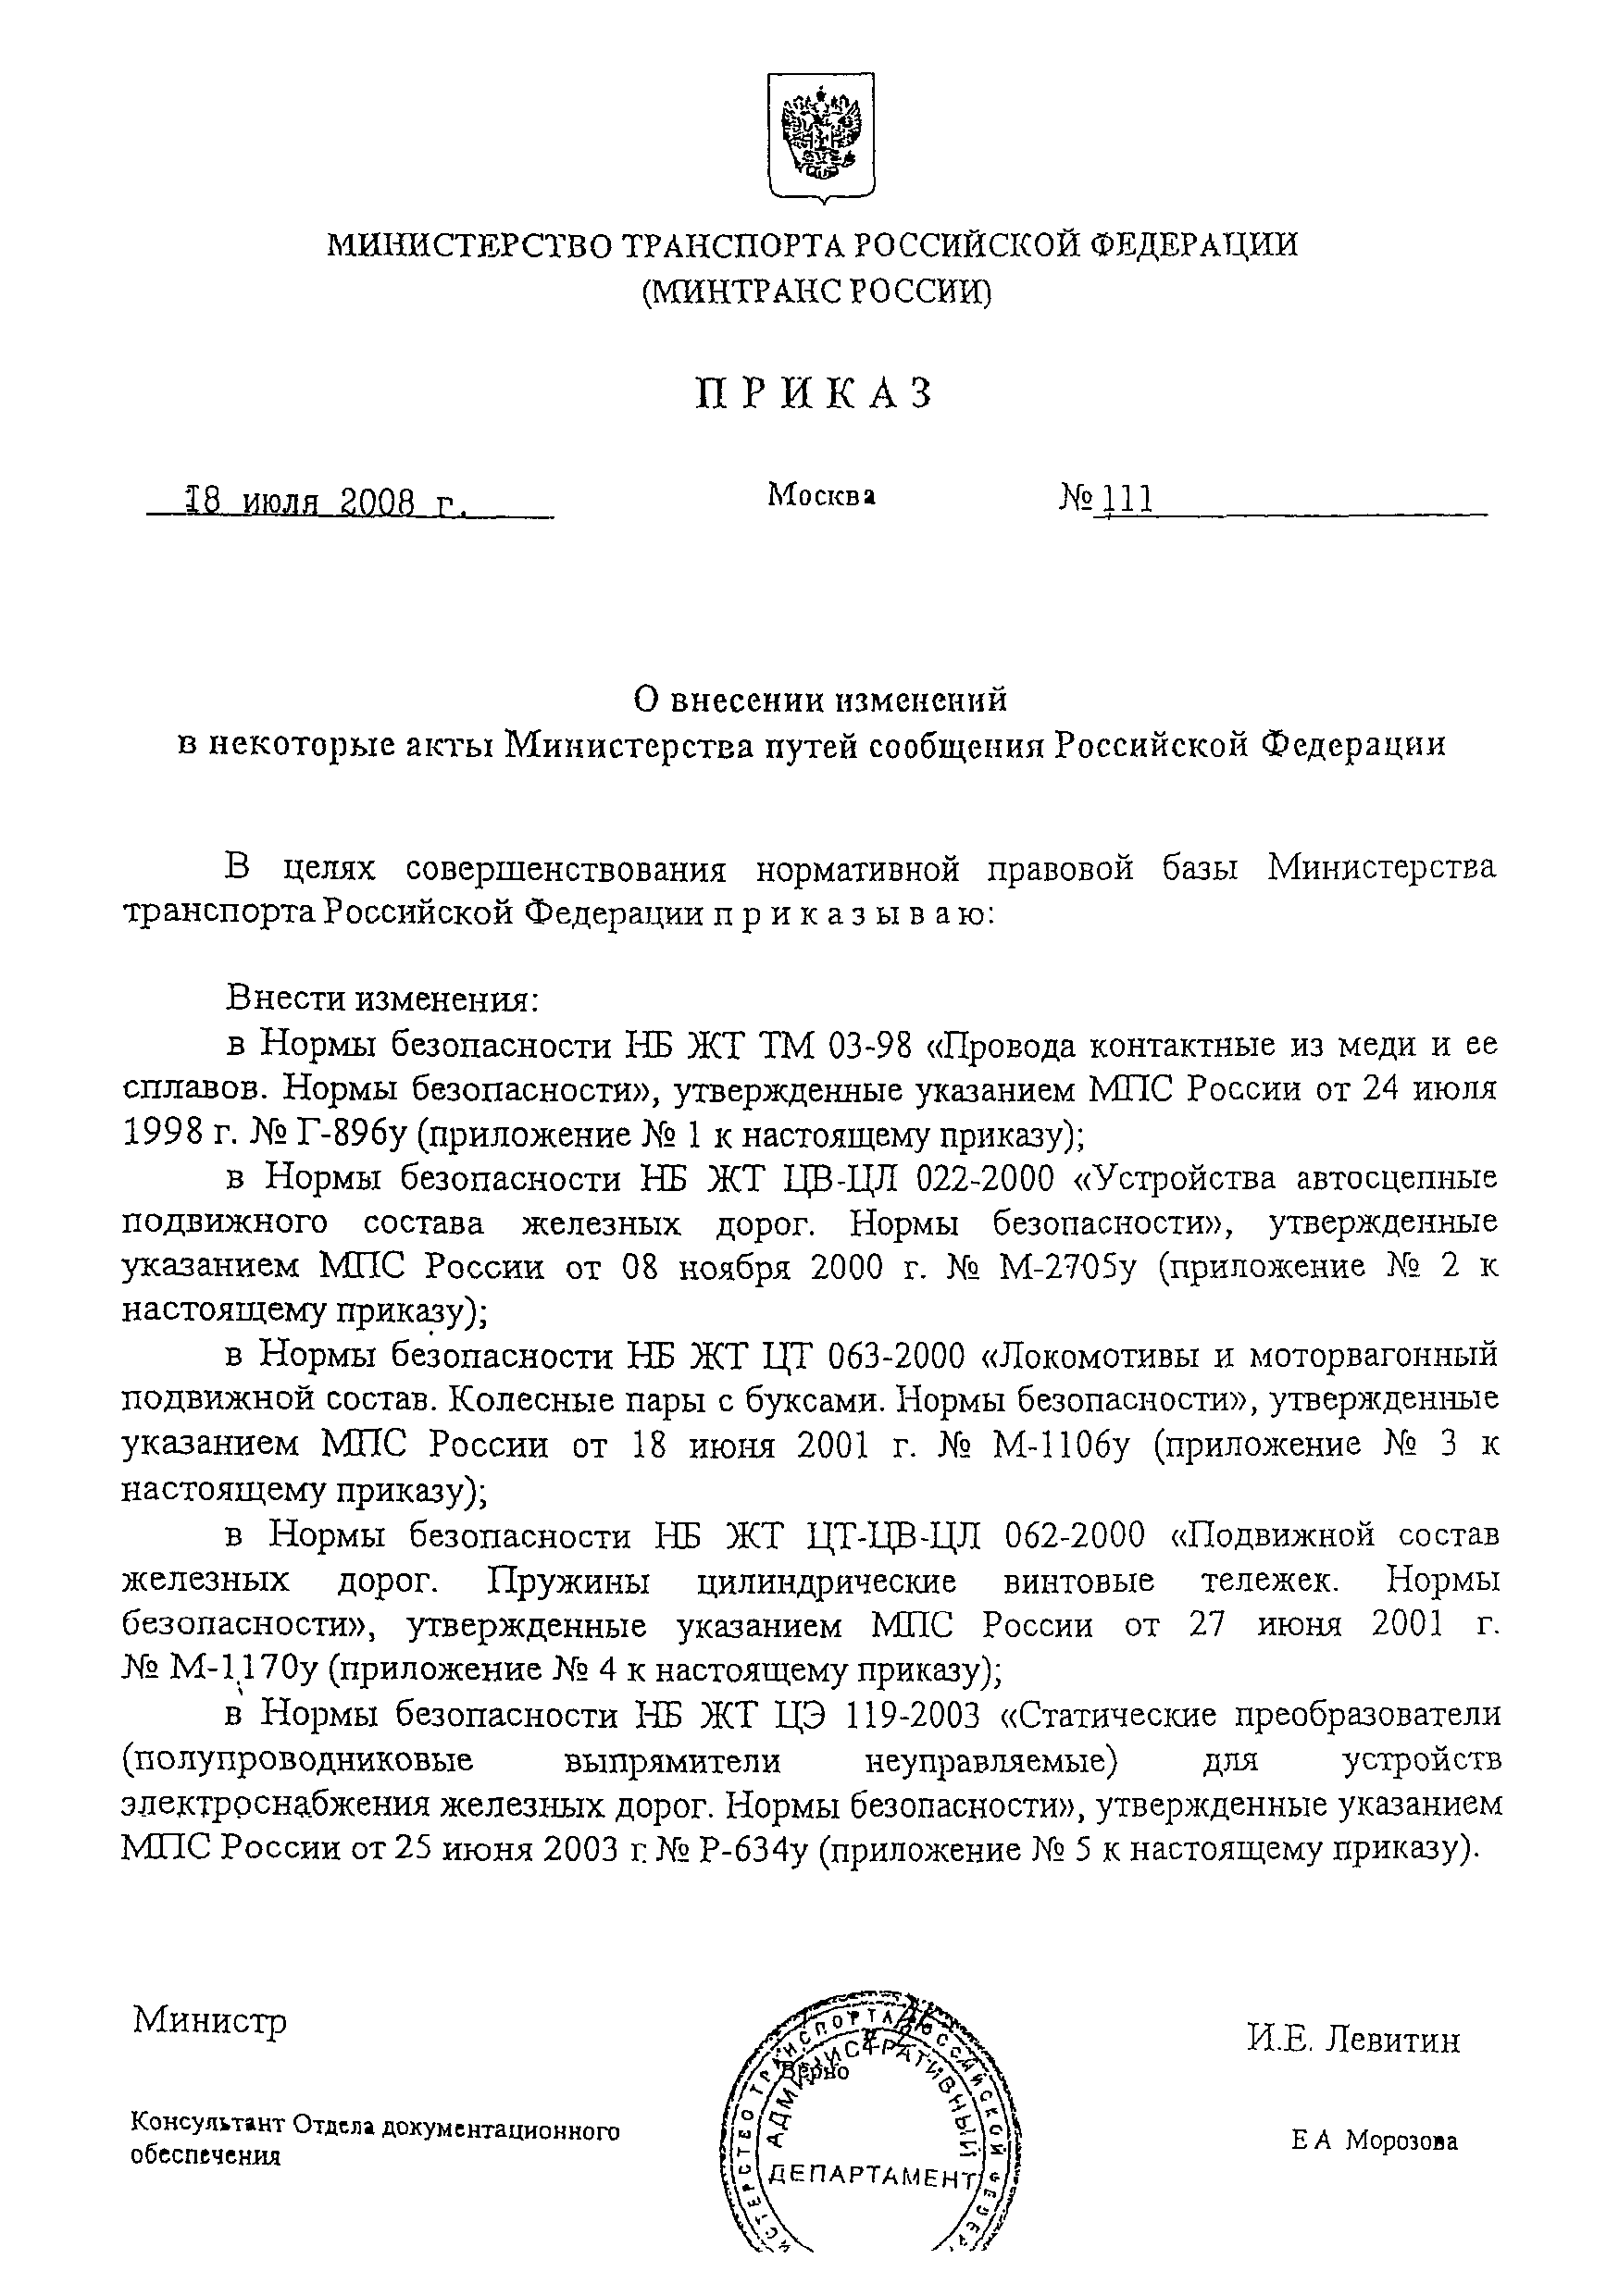 НБ ЖТ ЦЭ 119-2003